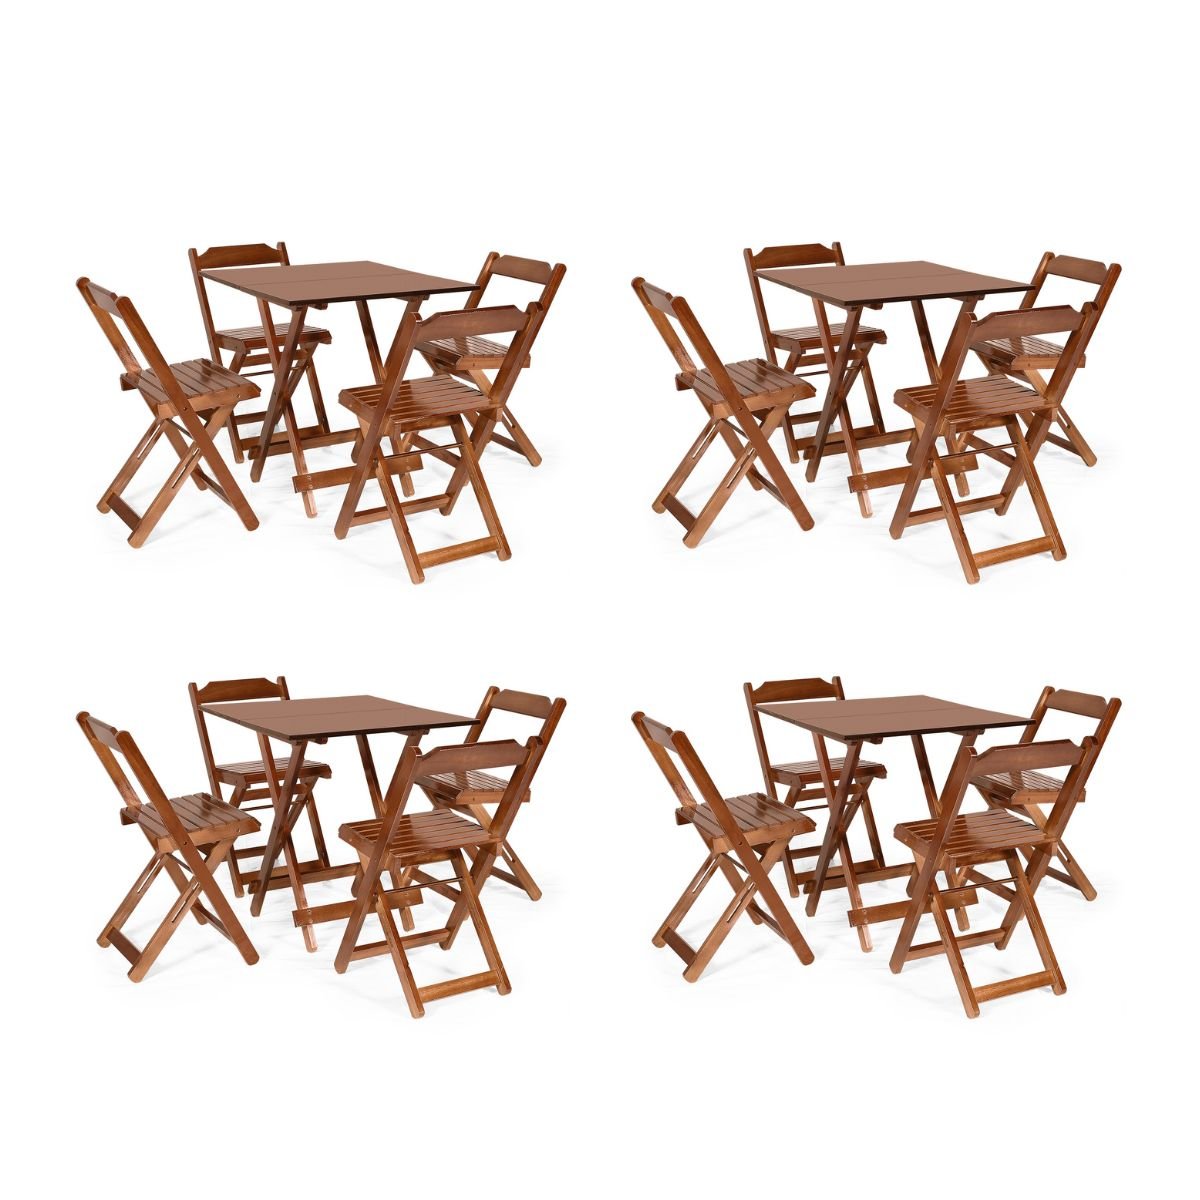 Kit 4 Conjuntos Dobráveis 70 X 70 com 4 Cadeiras Dobráveis Imbuia - Mòveis Britz